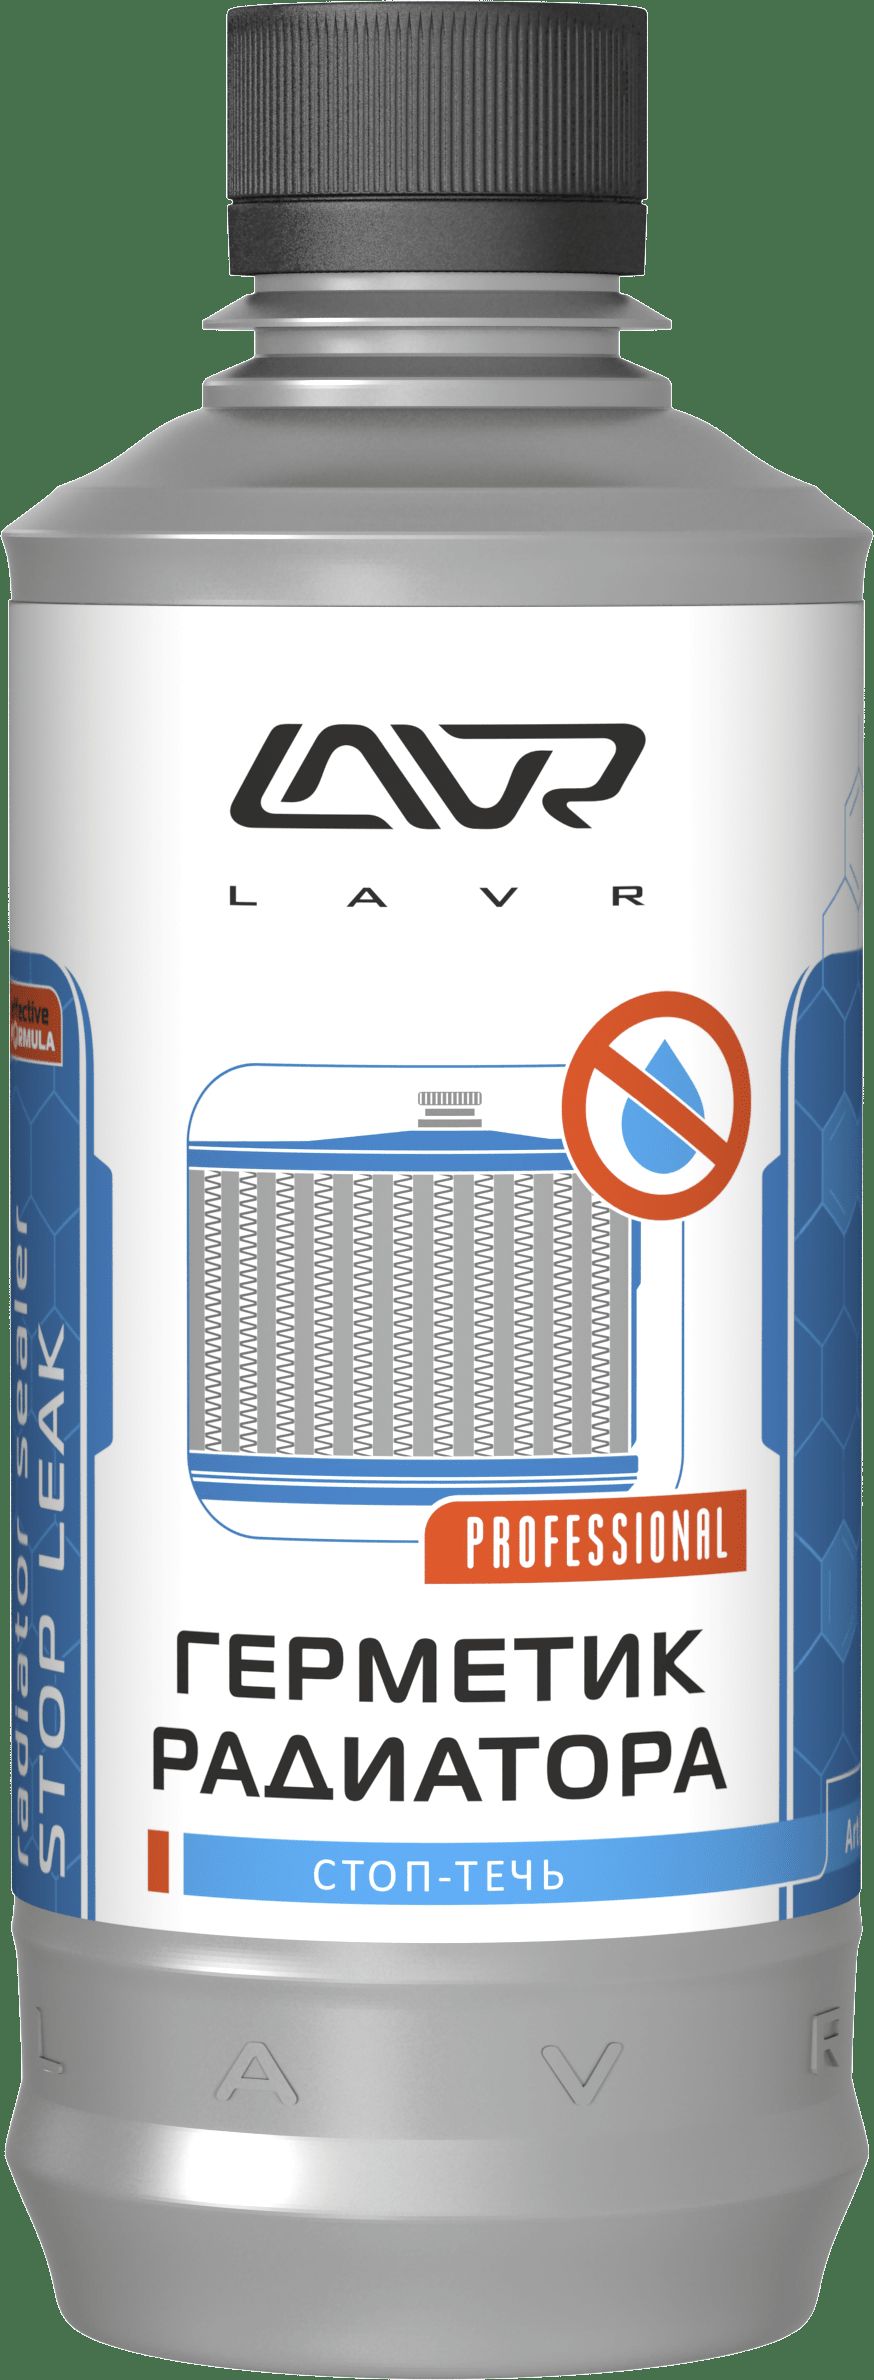 LN1105 LAVR герметик радиатора стоп-течь lavr stop leak, 310мл ln1105